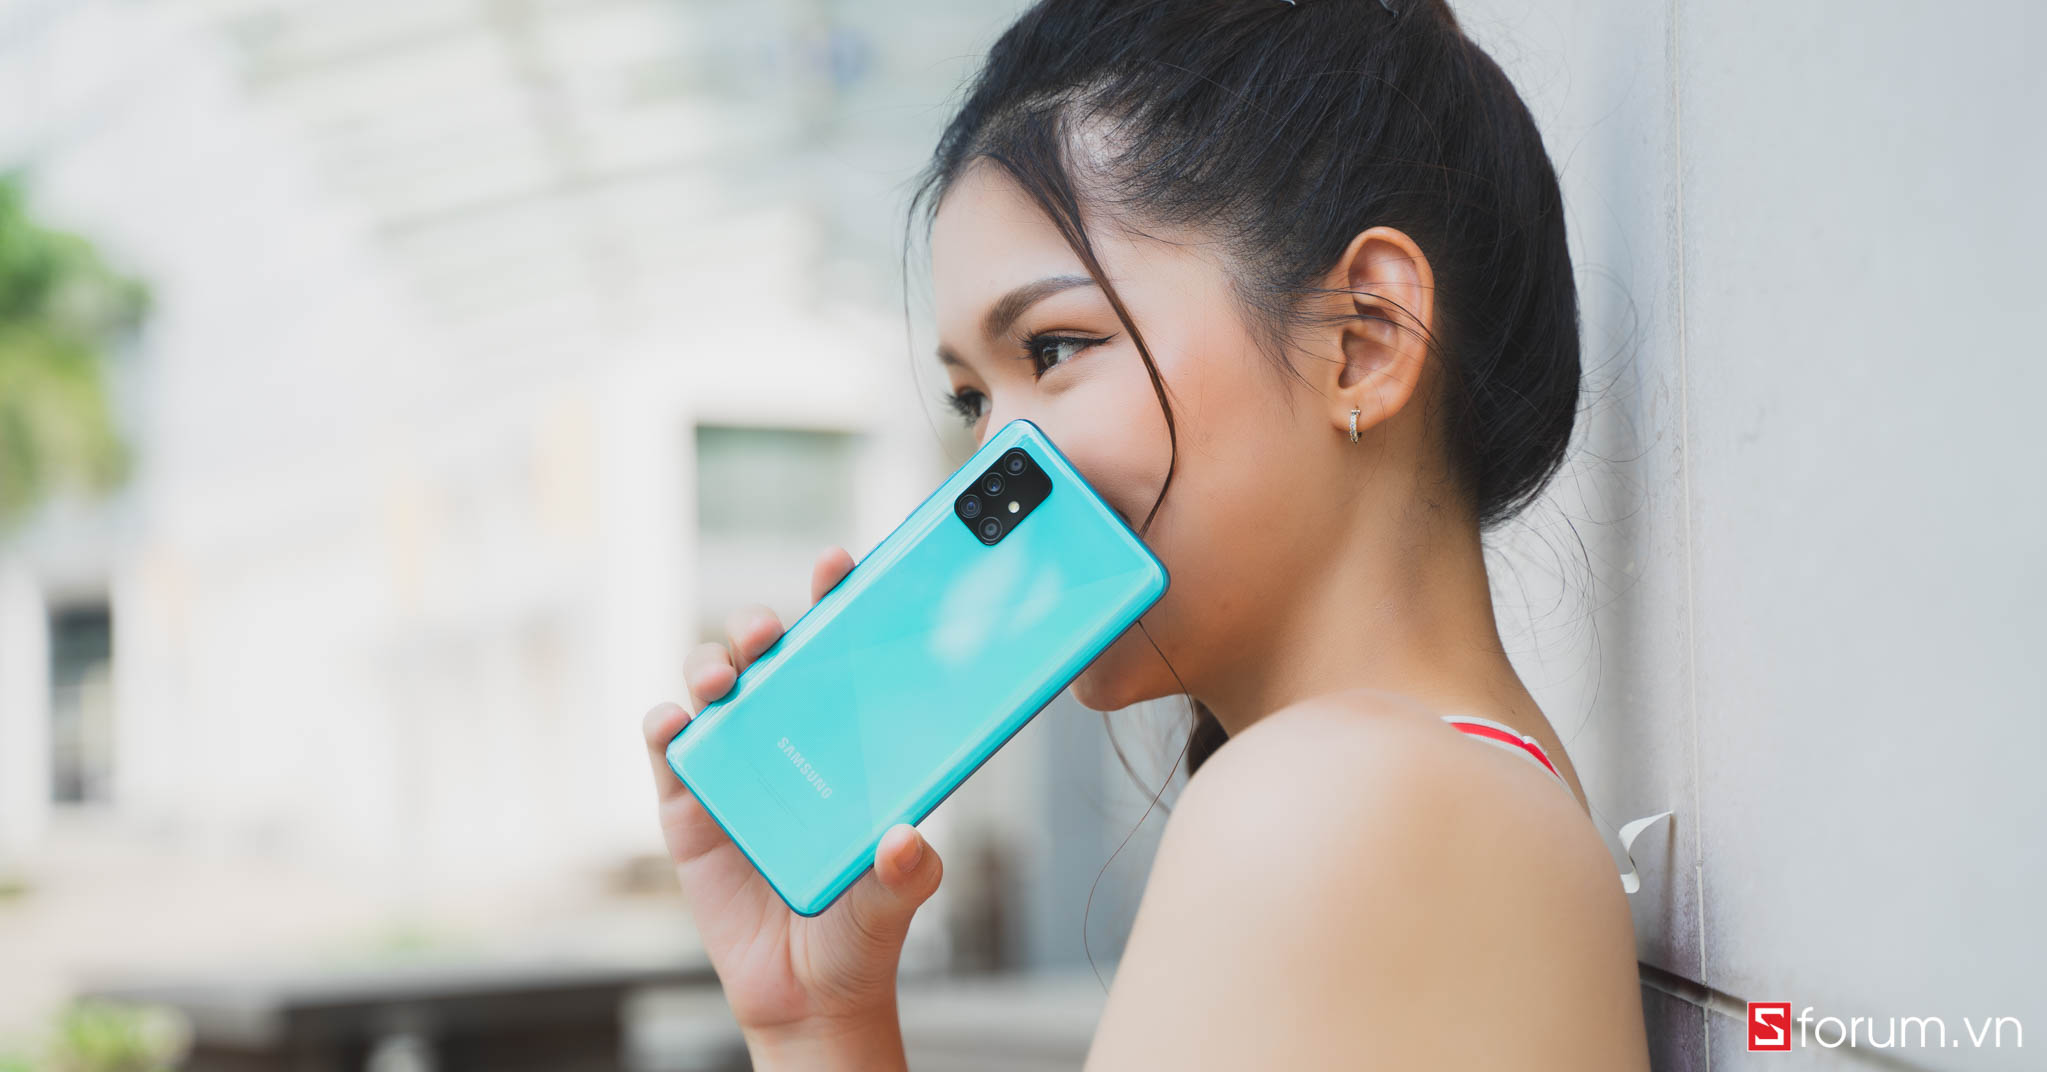 Sforum - Trang thông tin công nghệ mới nhất Galaxy-A51-xanh-cover-review-1 Những smartphone tầm trung chụp ảnh đẹp lung linh, du xuân không cần máy ảnh nặng nề 